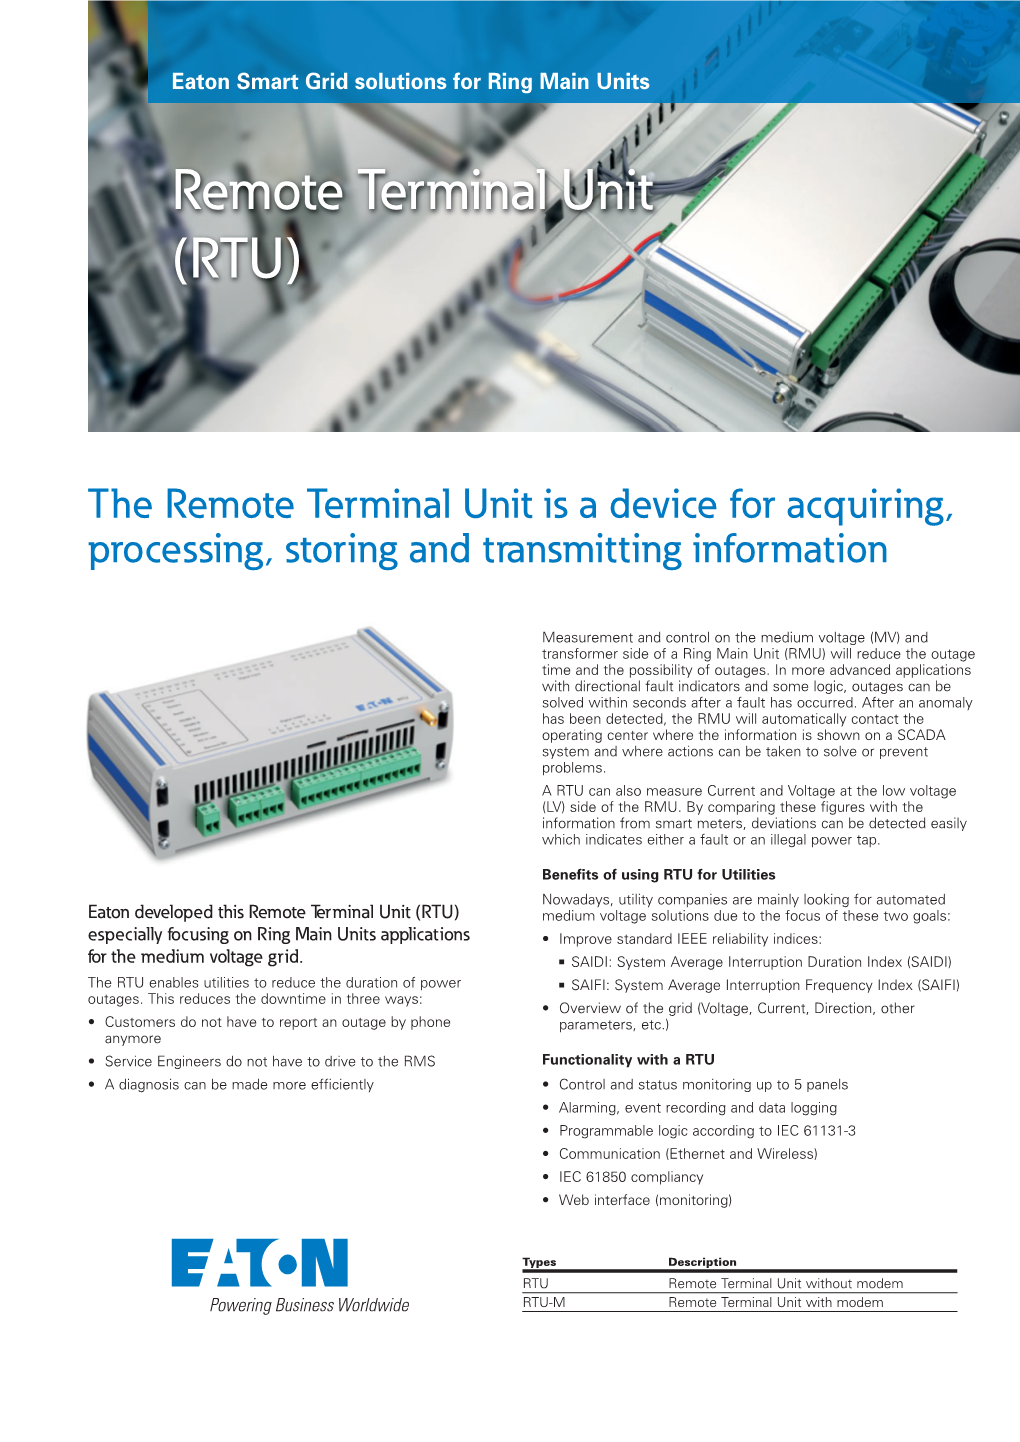 Remote Terminal Unit (RTU)